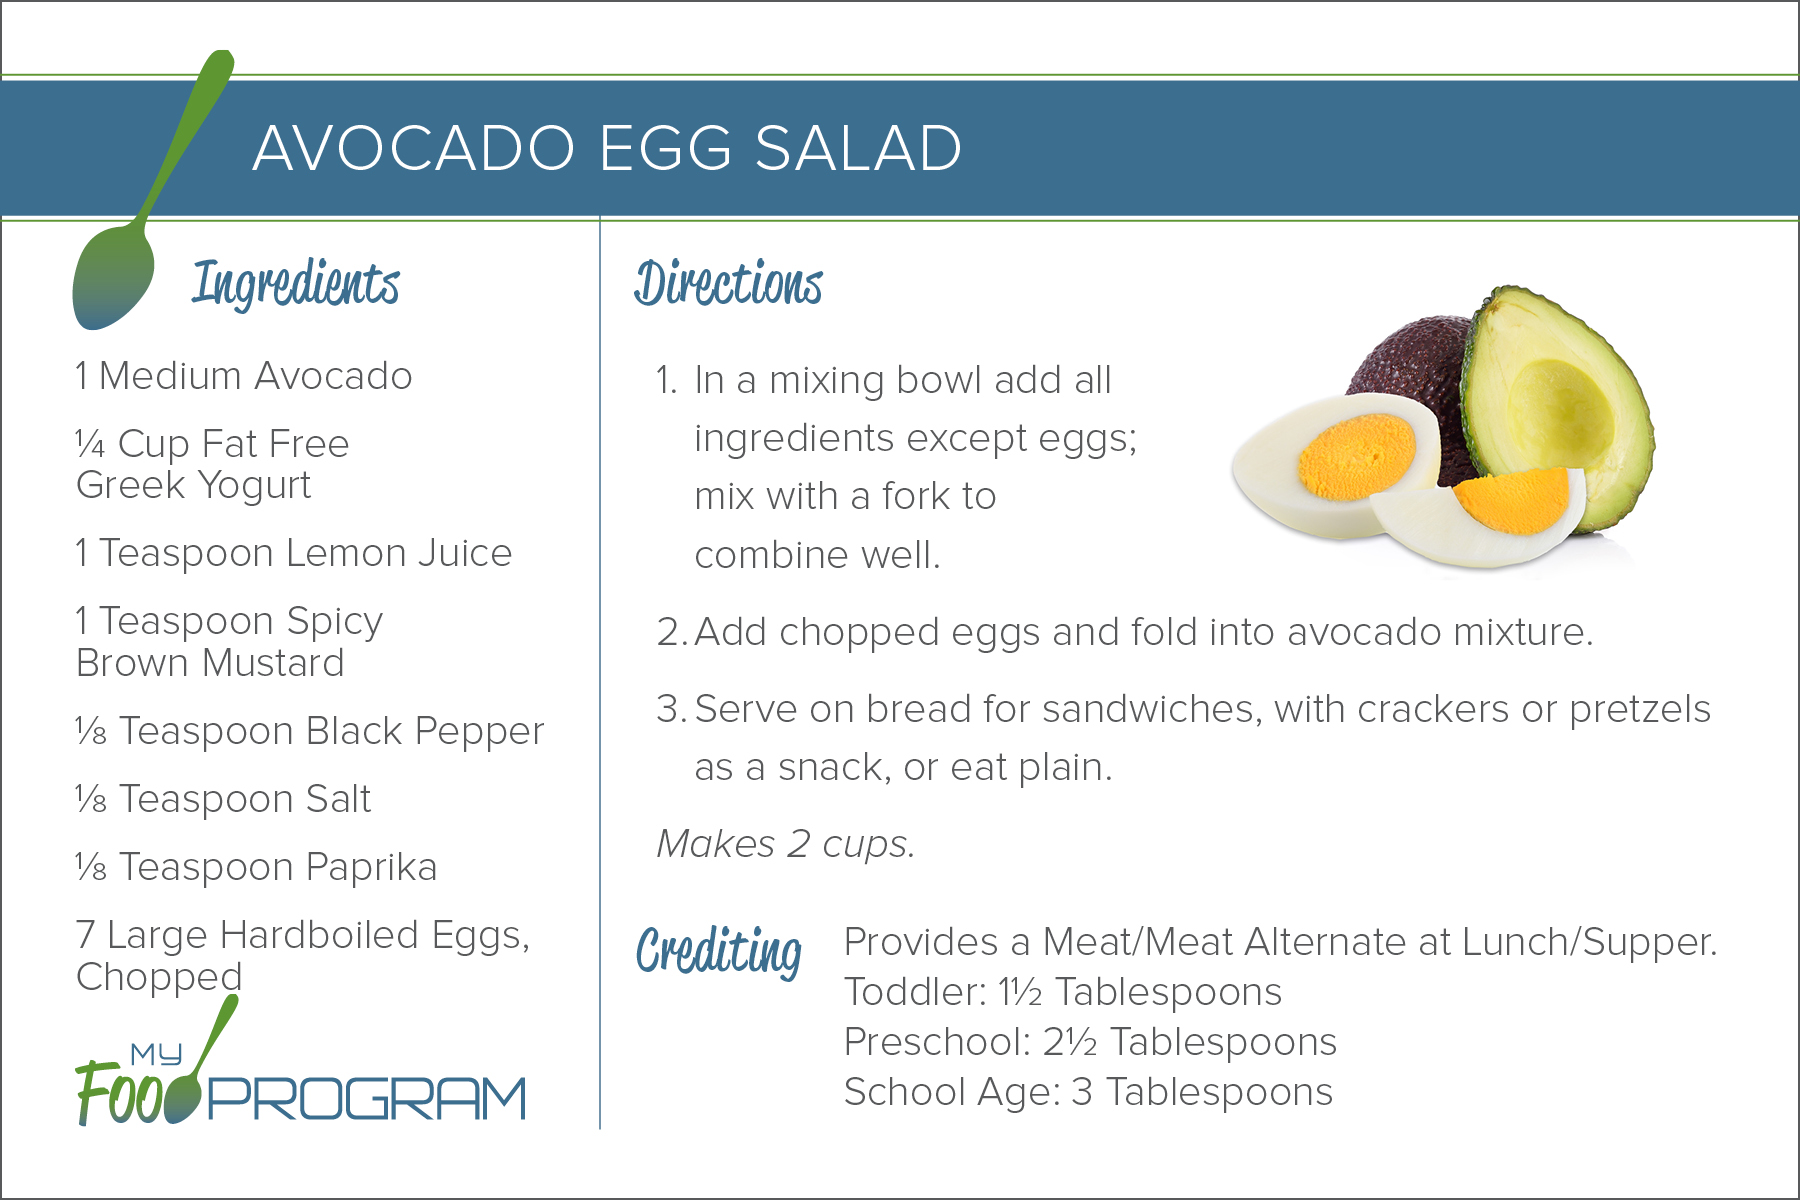 Avocado Egg Salad Recipe Card